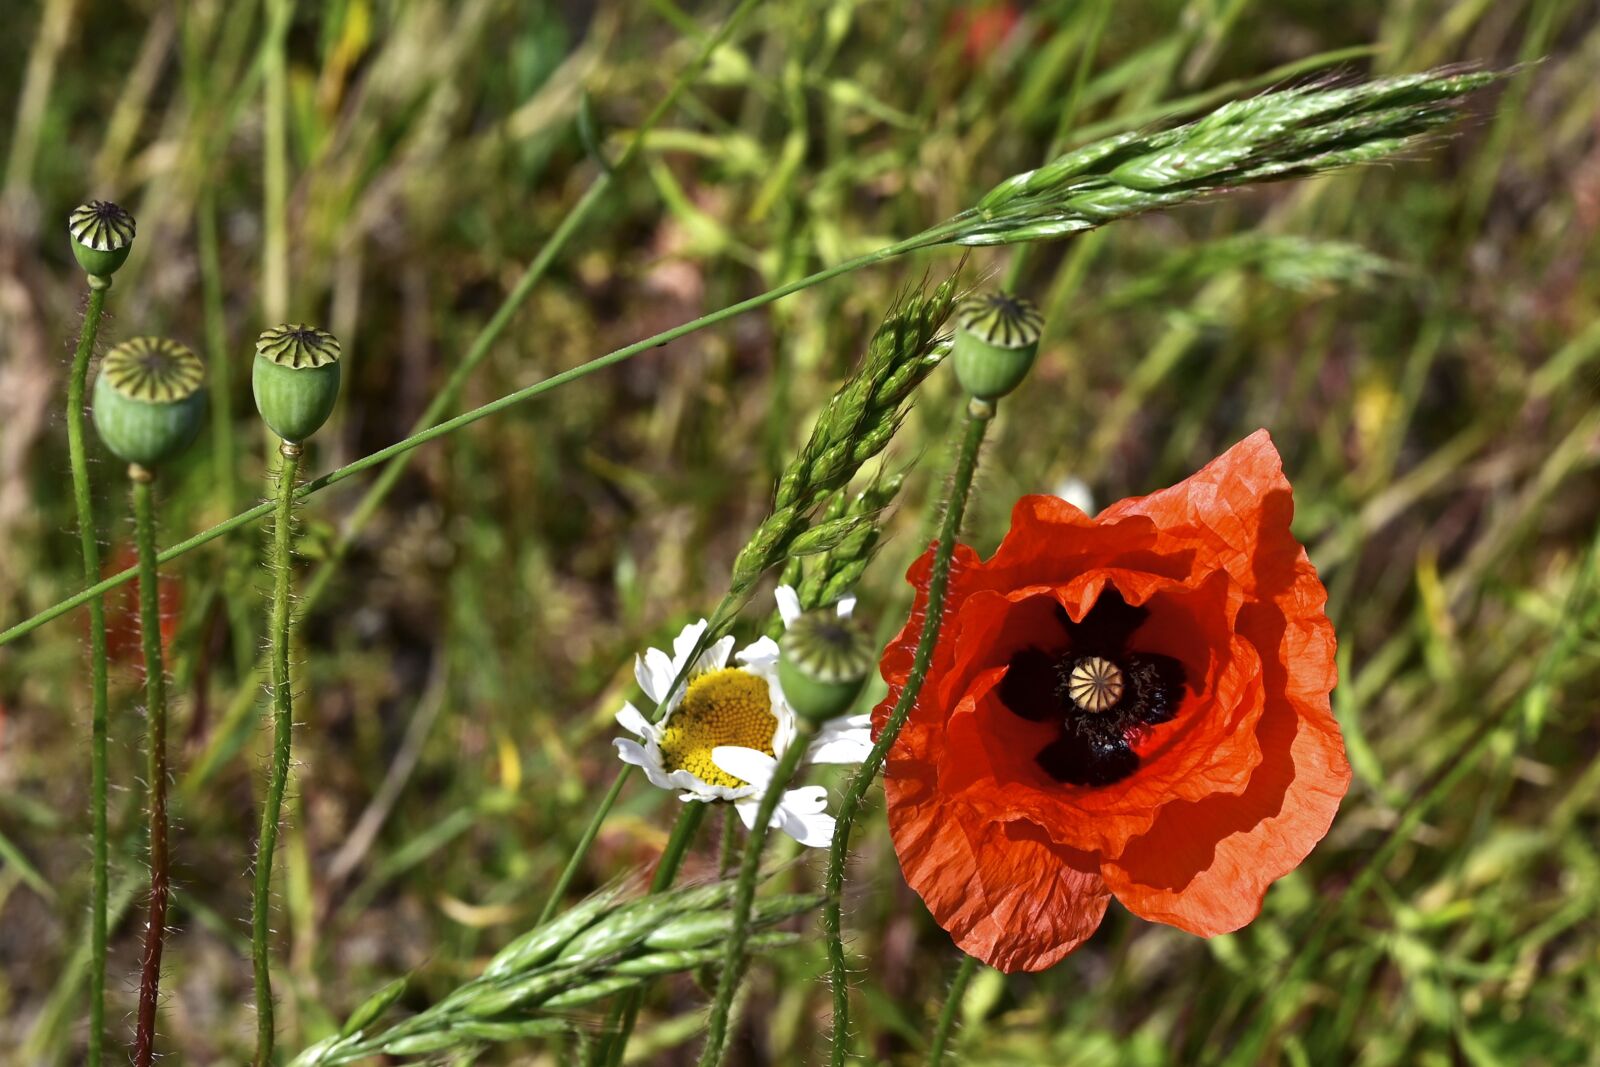 Nikon Z6 sample photo. Poppy, poppy flower, meadow photography